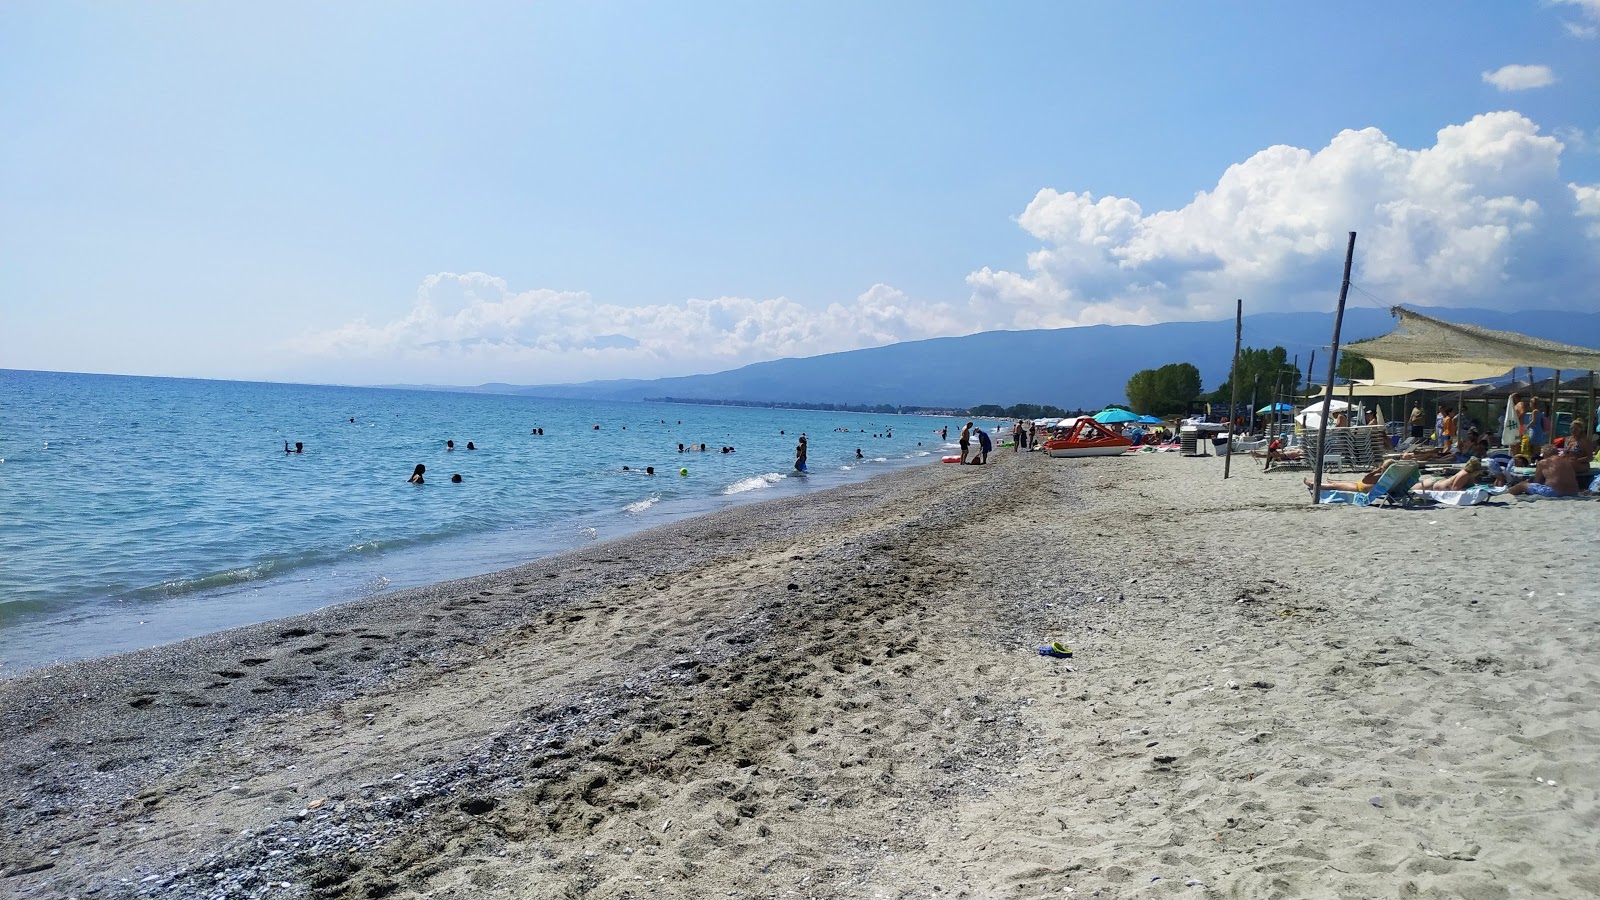 Fotografie cu Mylos beach - locul popular printre cunoscătorii de relaxare